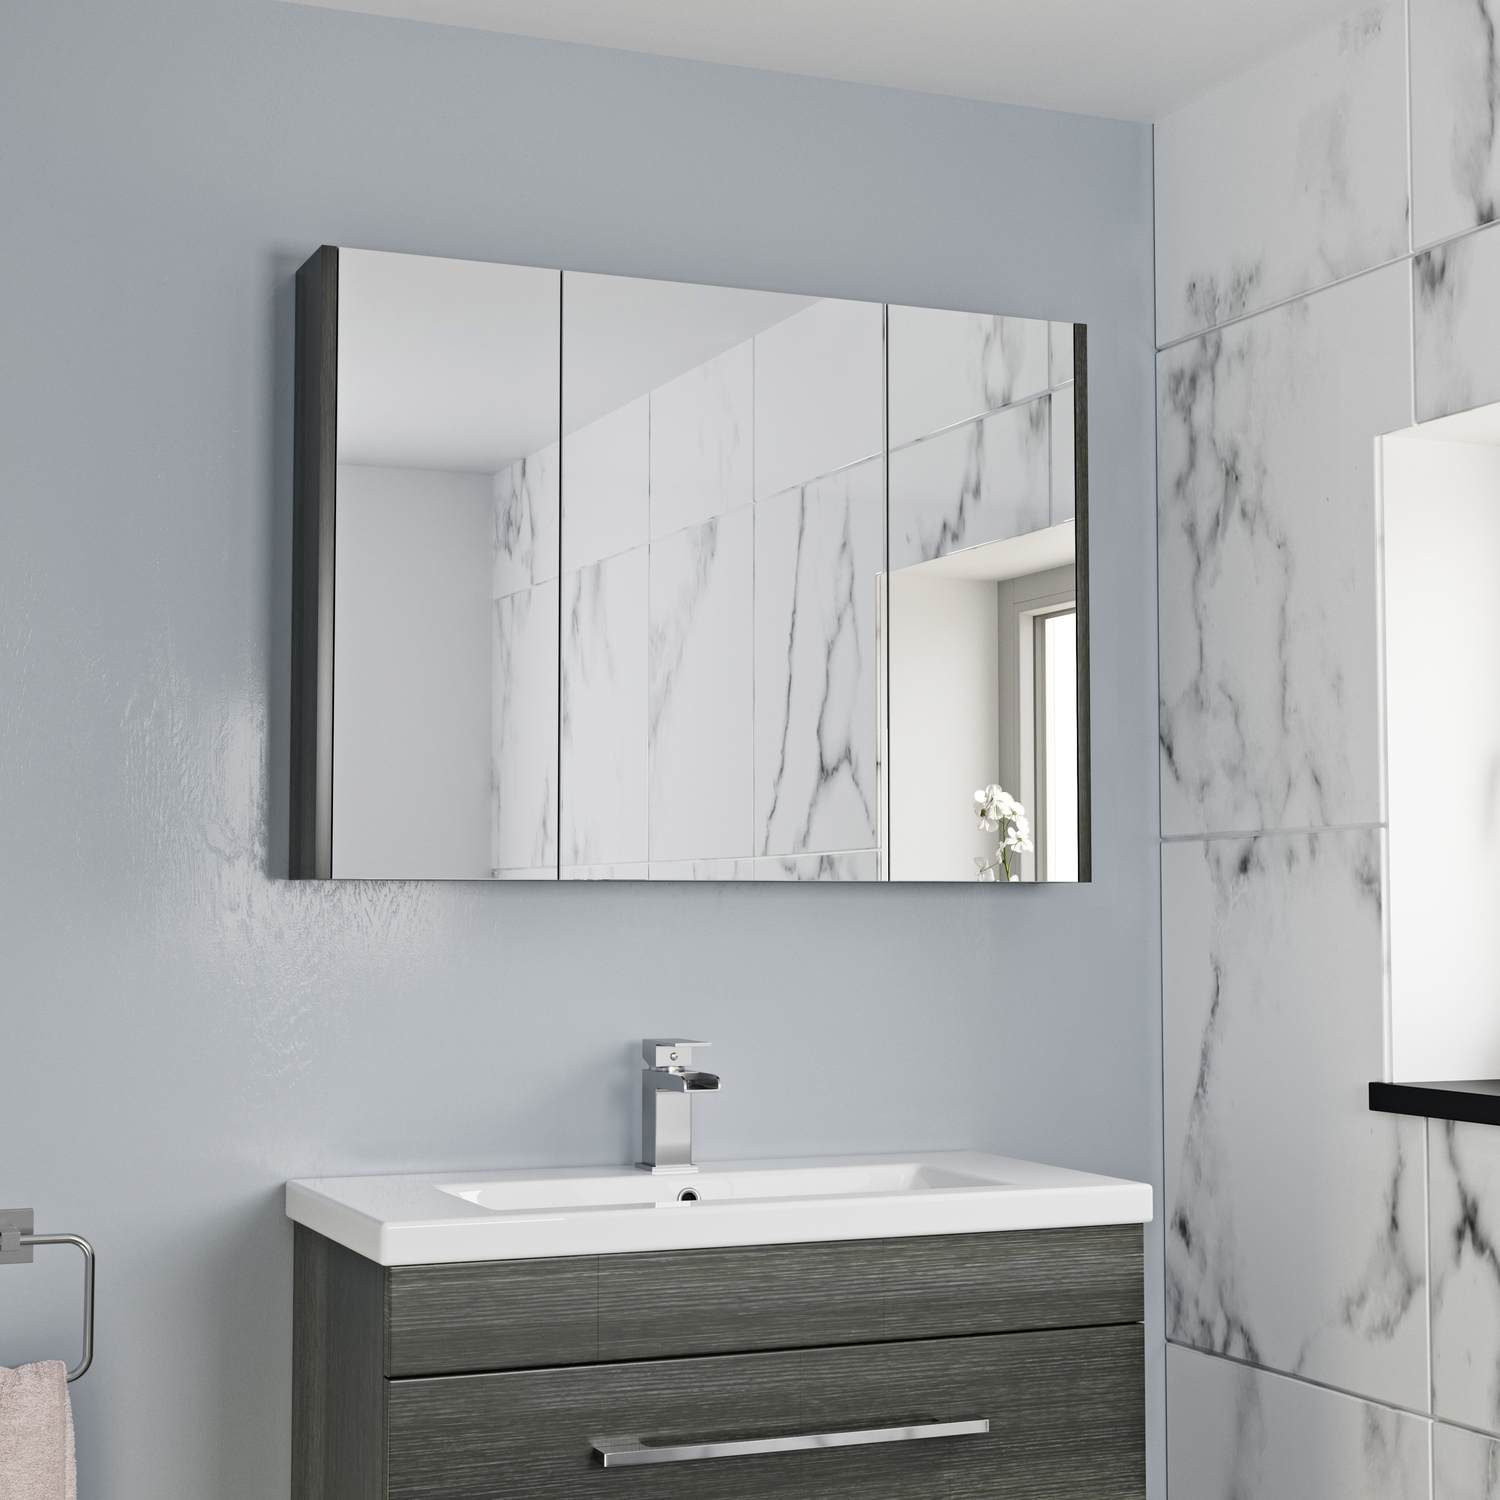 Mirror Cabinet Bathroom
 900mm Bathroom Mirror Cabinet 3 Door Storage Cupboard Wall